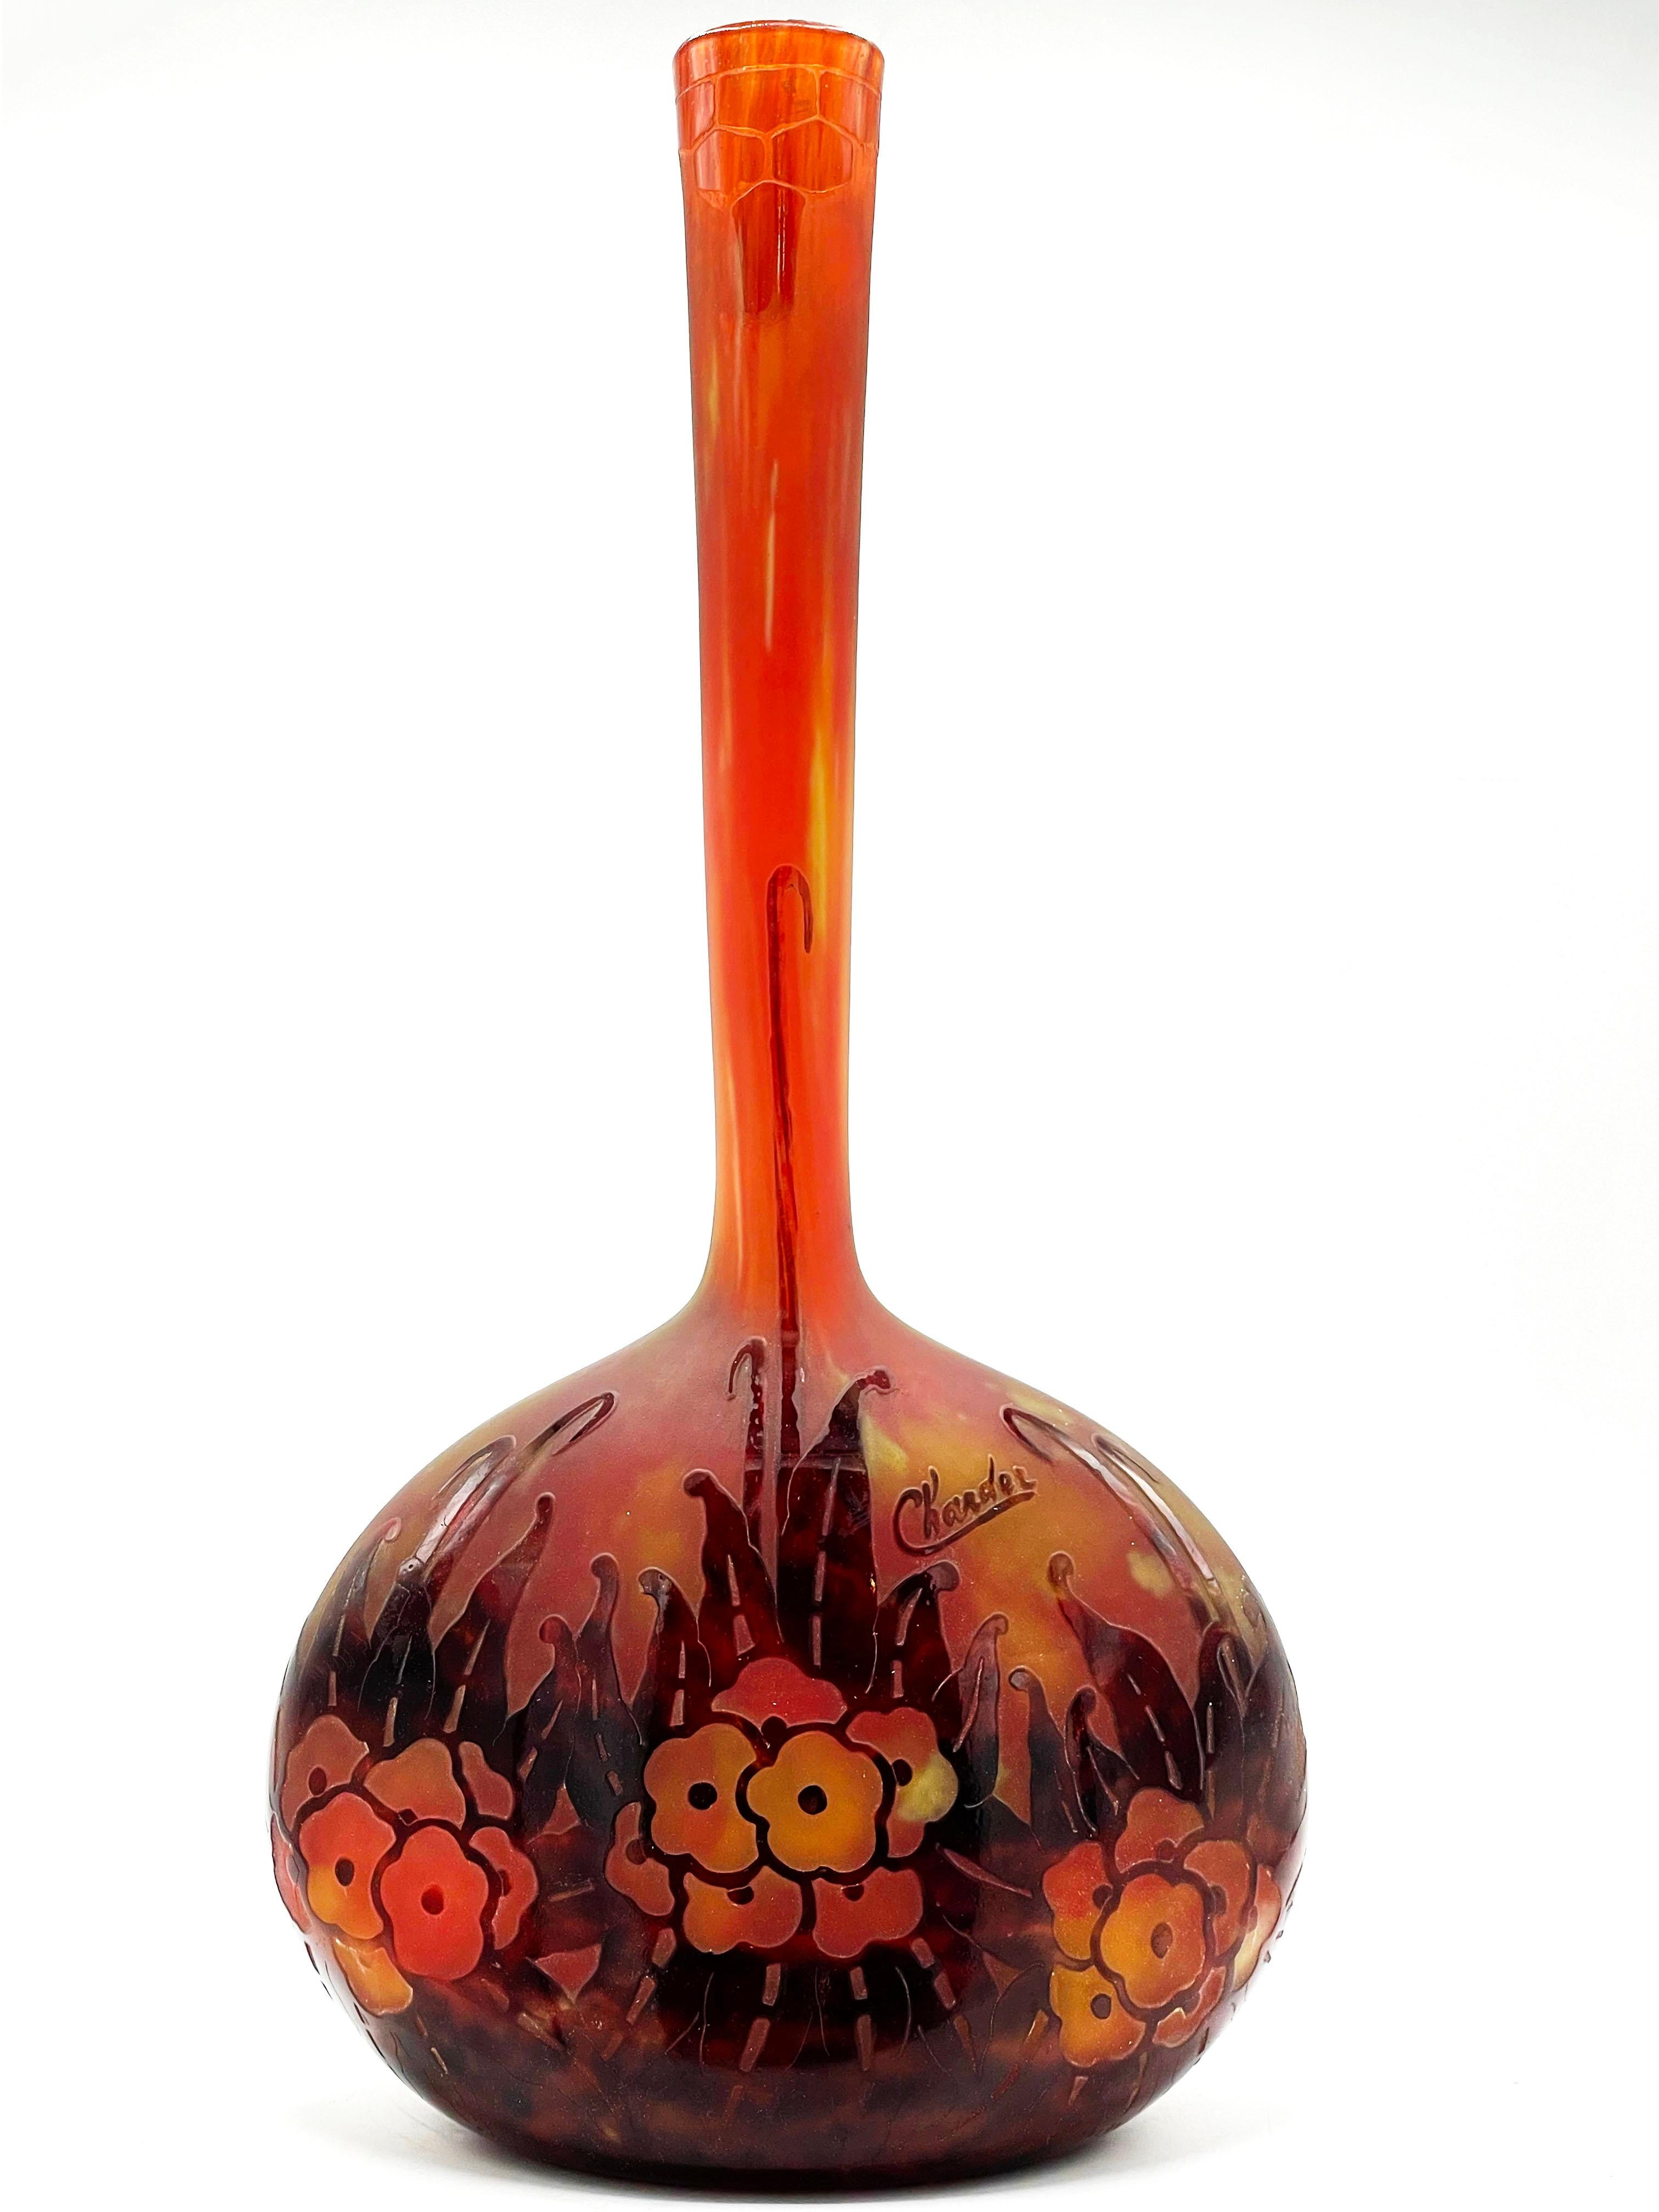 Charder Overlay Glas 
Art Deco Glas Herkunft Frankreich

Französische Vase aus Kamee-Glas. Die Vase ist eine der Glasvasen mit dieser seltsamen und charmanten langen, hohen Halsform, die ich persönlich gesehen habe. Die Vase hat durchweg schöne